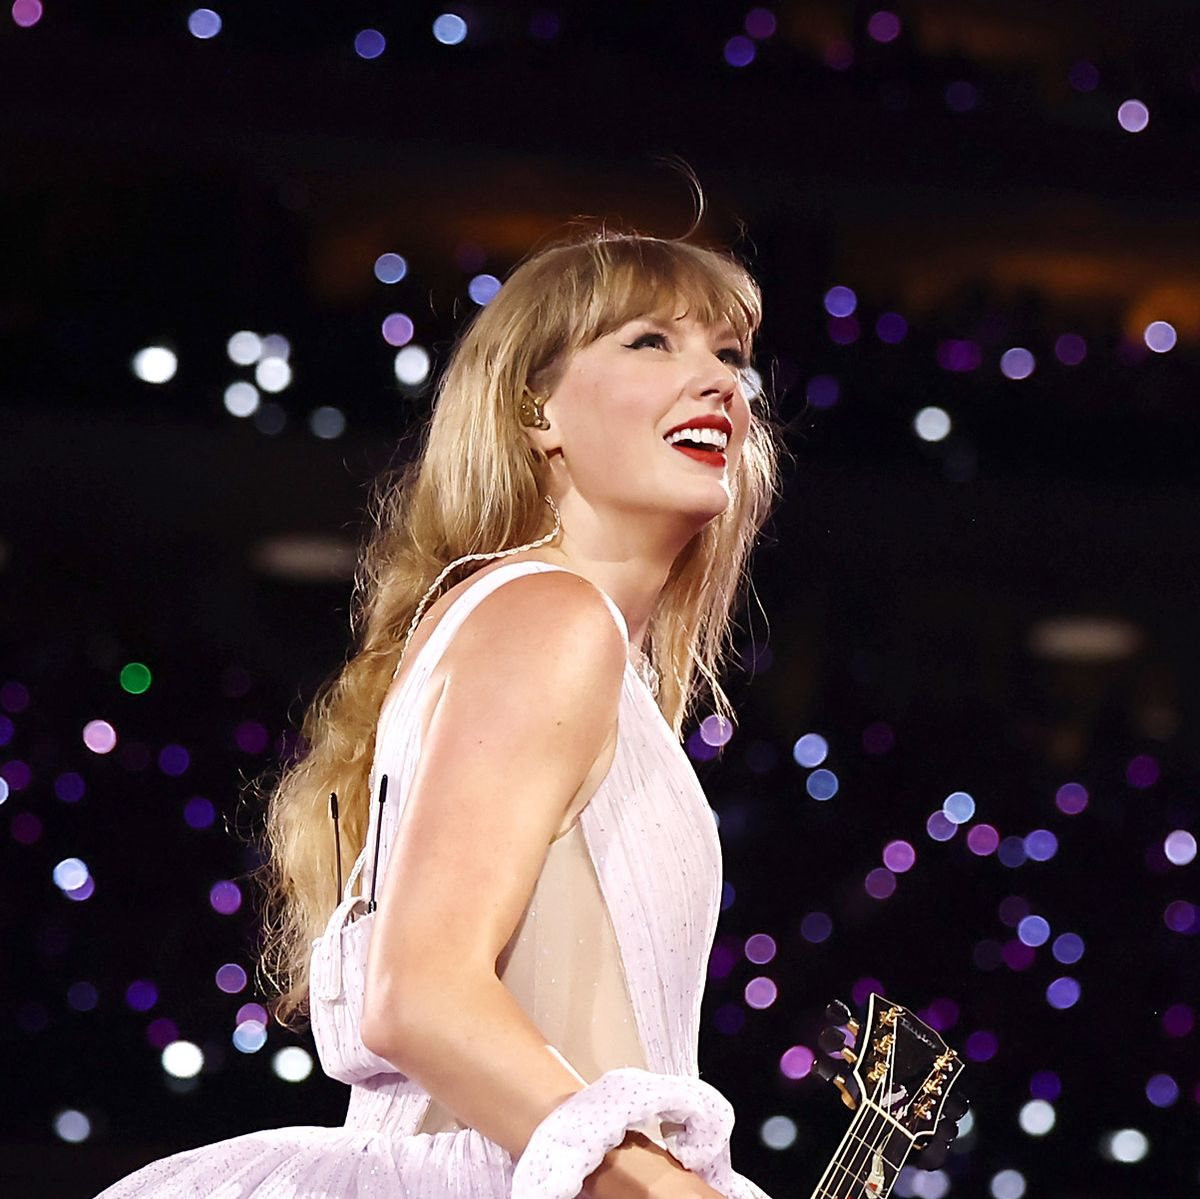 Xuýt xoa với danh mục bất động sản trị giá ít nhất 150 triệu USD của nữ tỷ phú âm nhạc quyền lực nước Mỹ Taylor Swift 